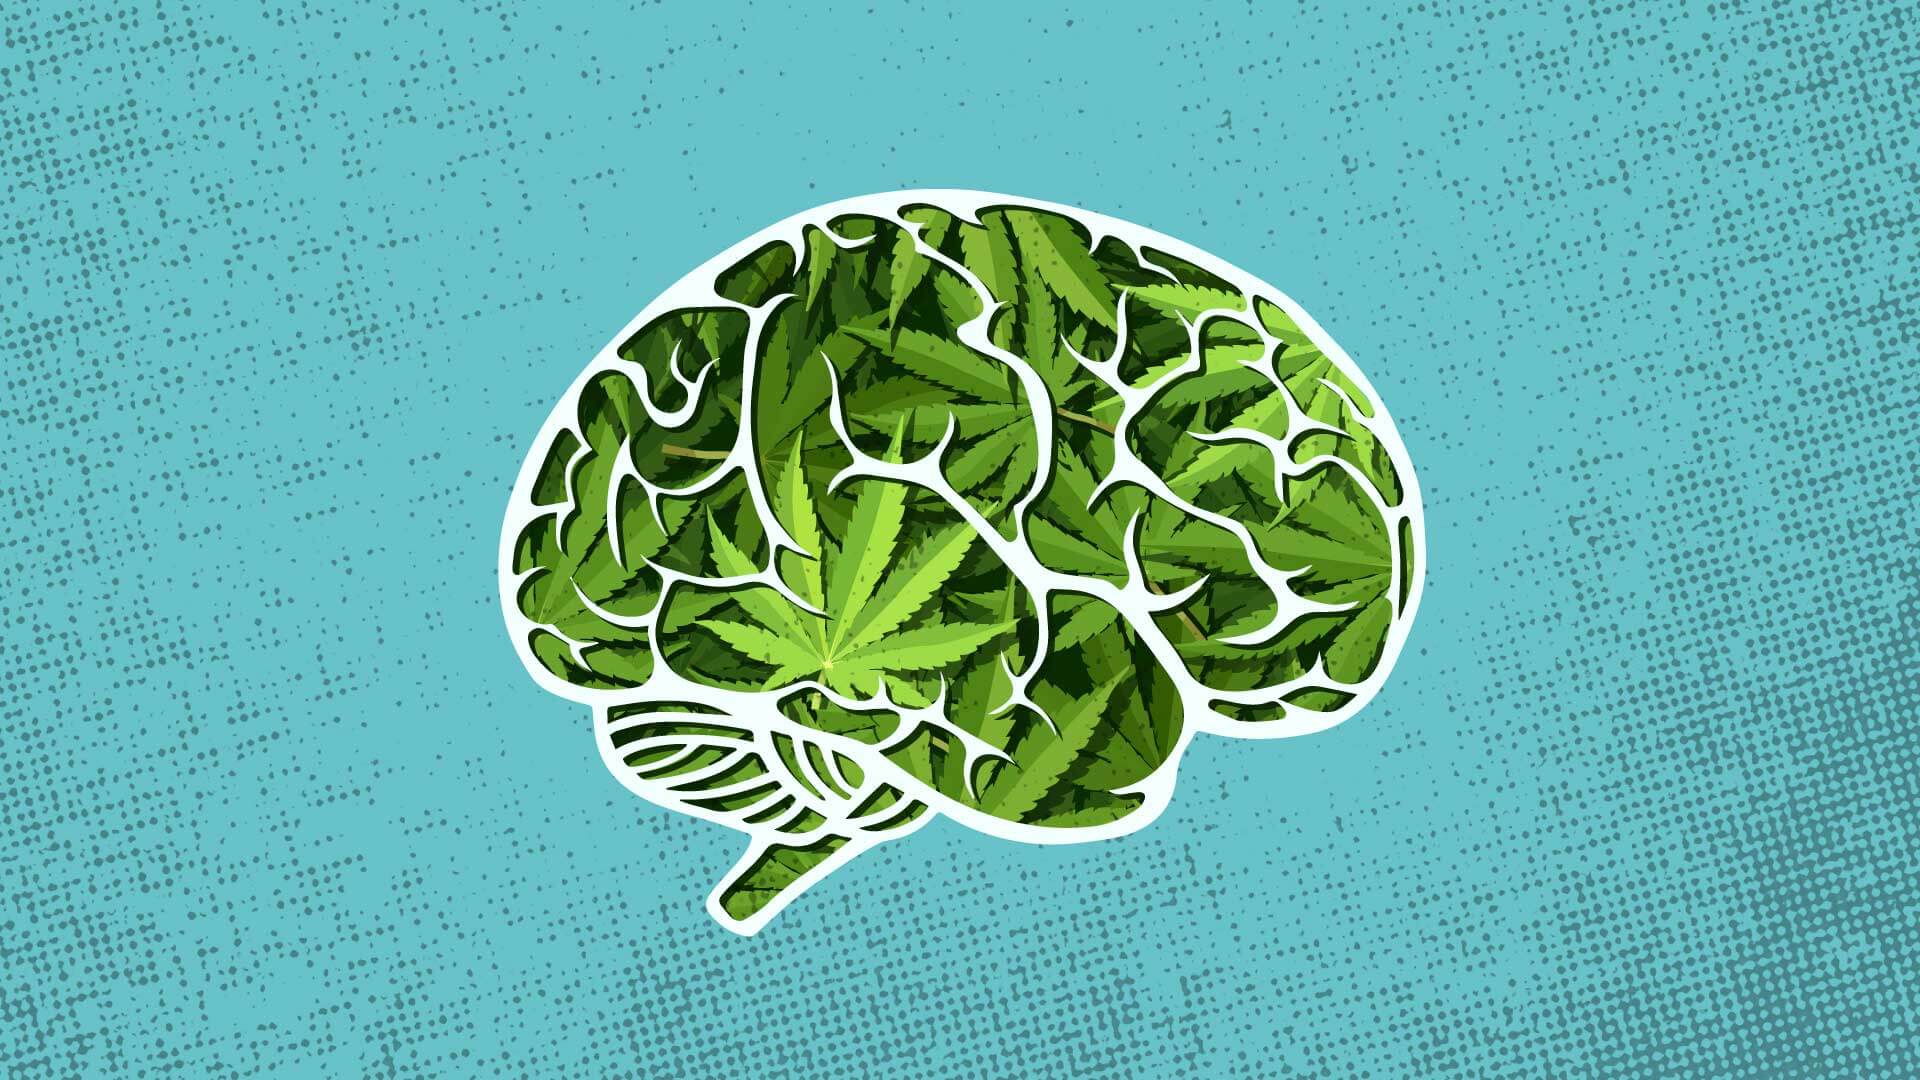 vector popart image of brain with marijuana in it